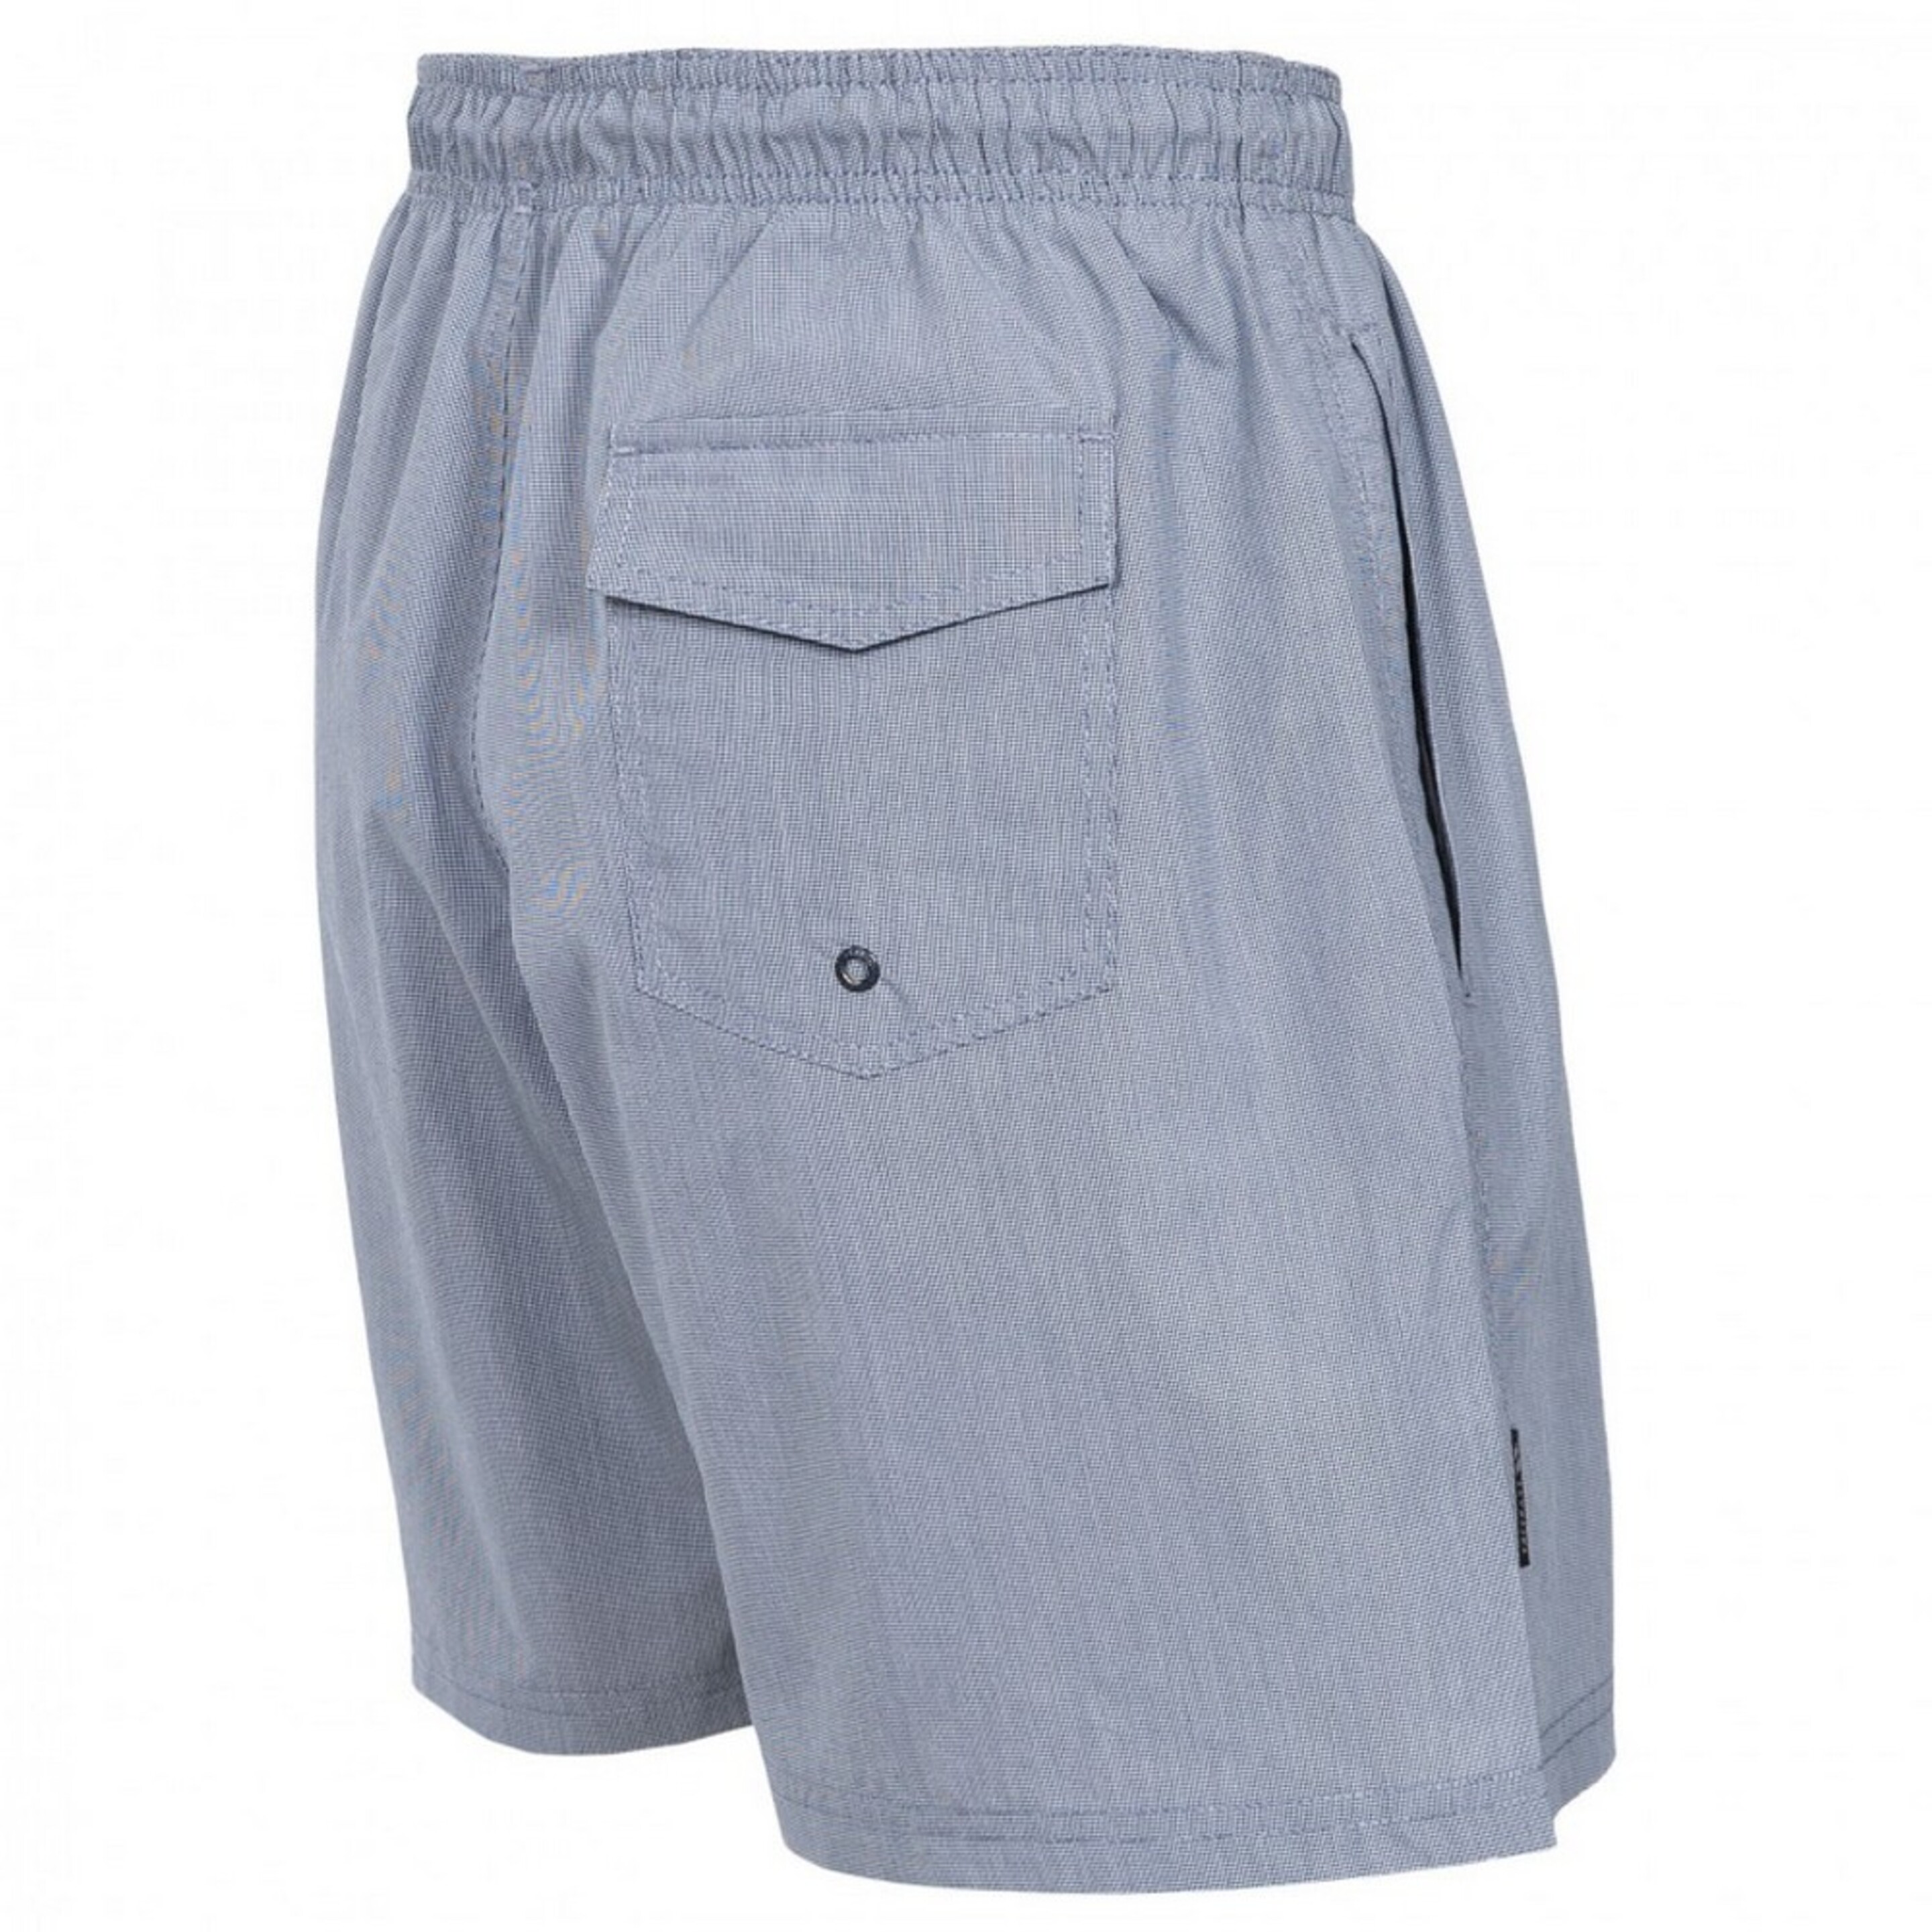 Pantalones Cortos De Verano Modelo Volted-trespass - Azul  MKP